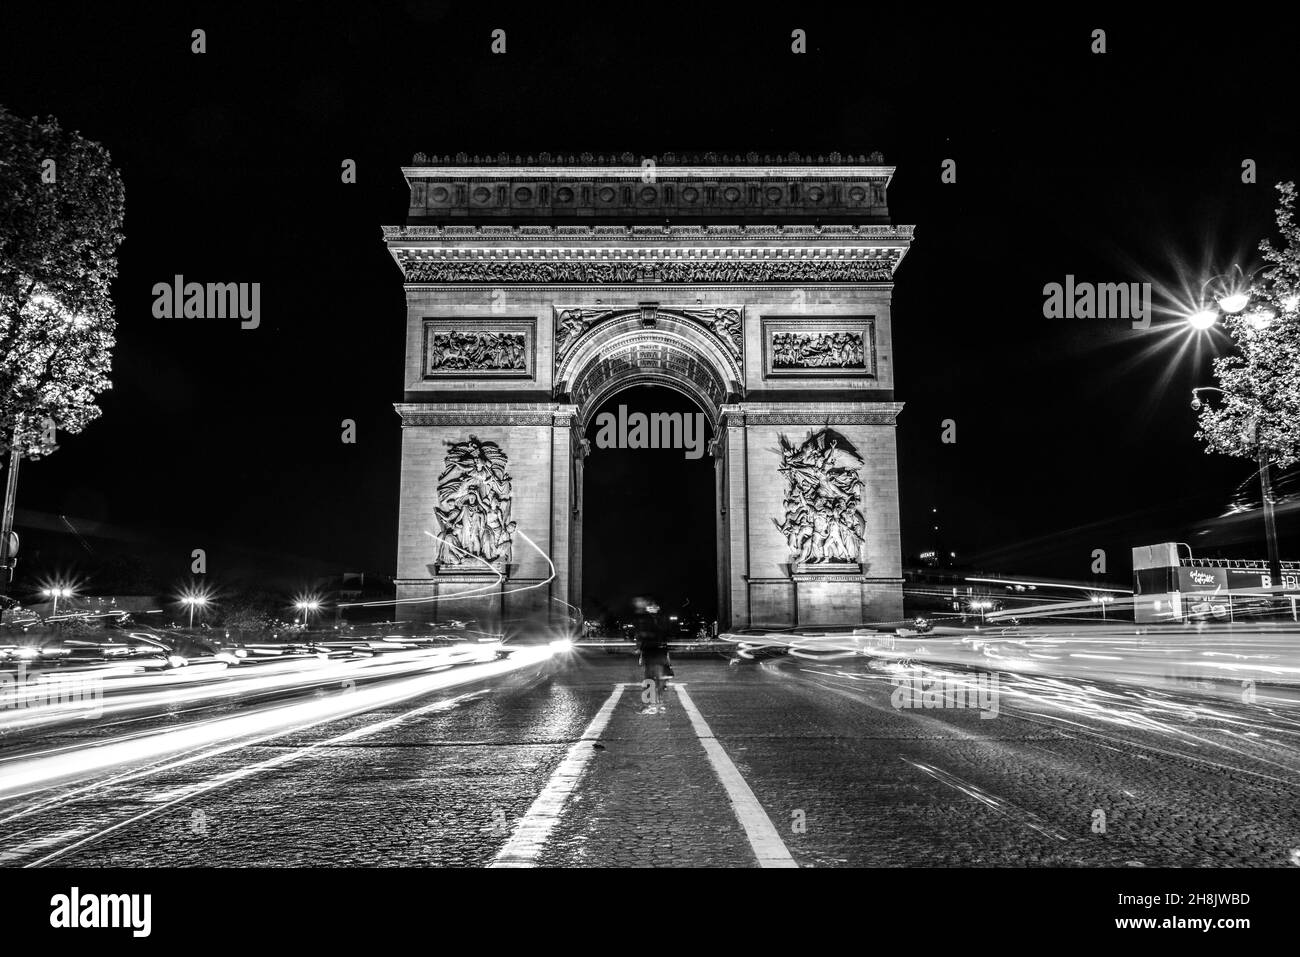 Traffico notturno sugli Champs-Elysees, Arc de Triomph sullo sfondo, Parigi, Francia Foto Stock